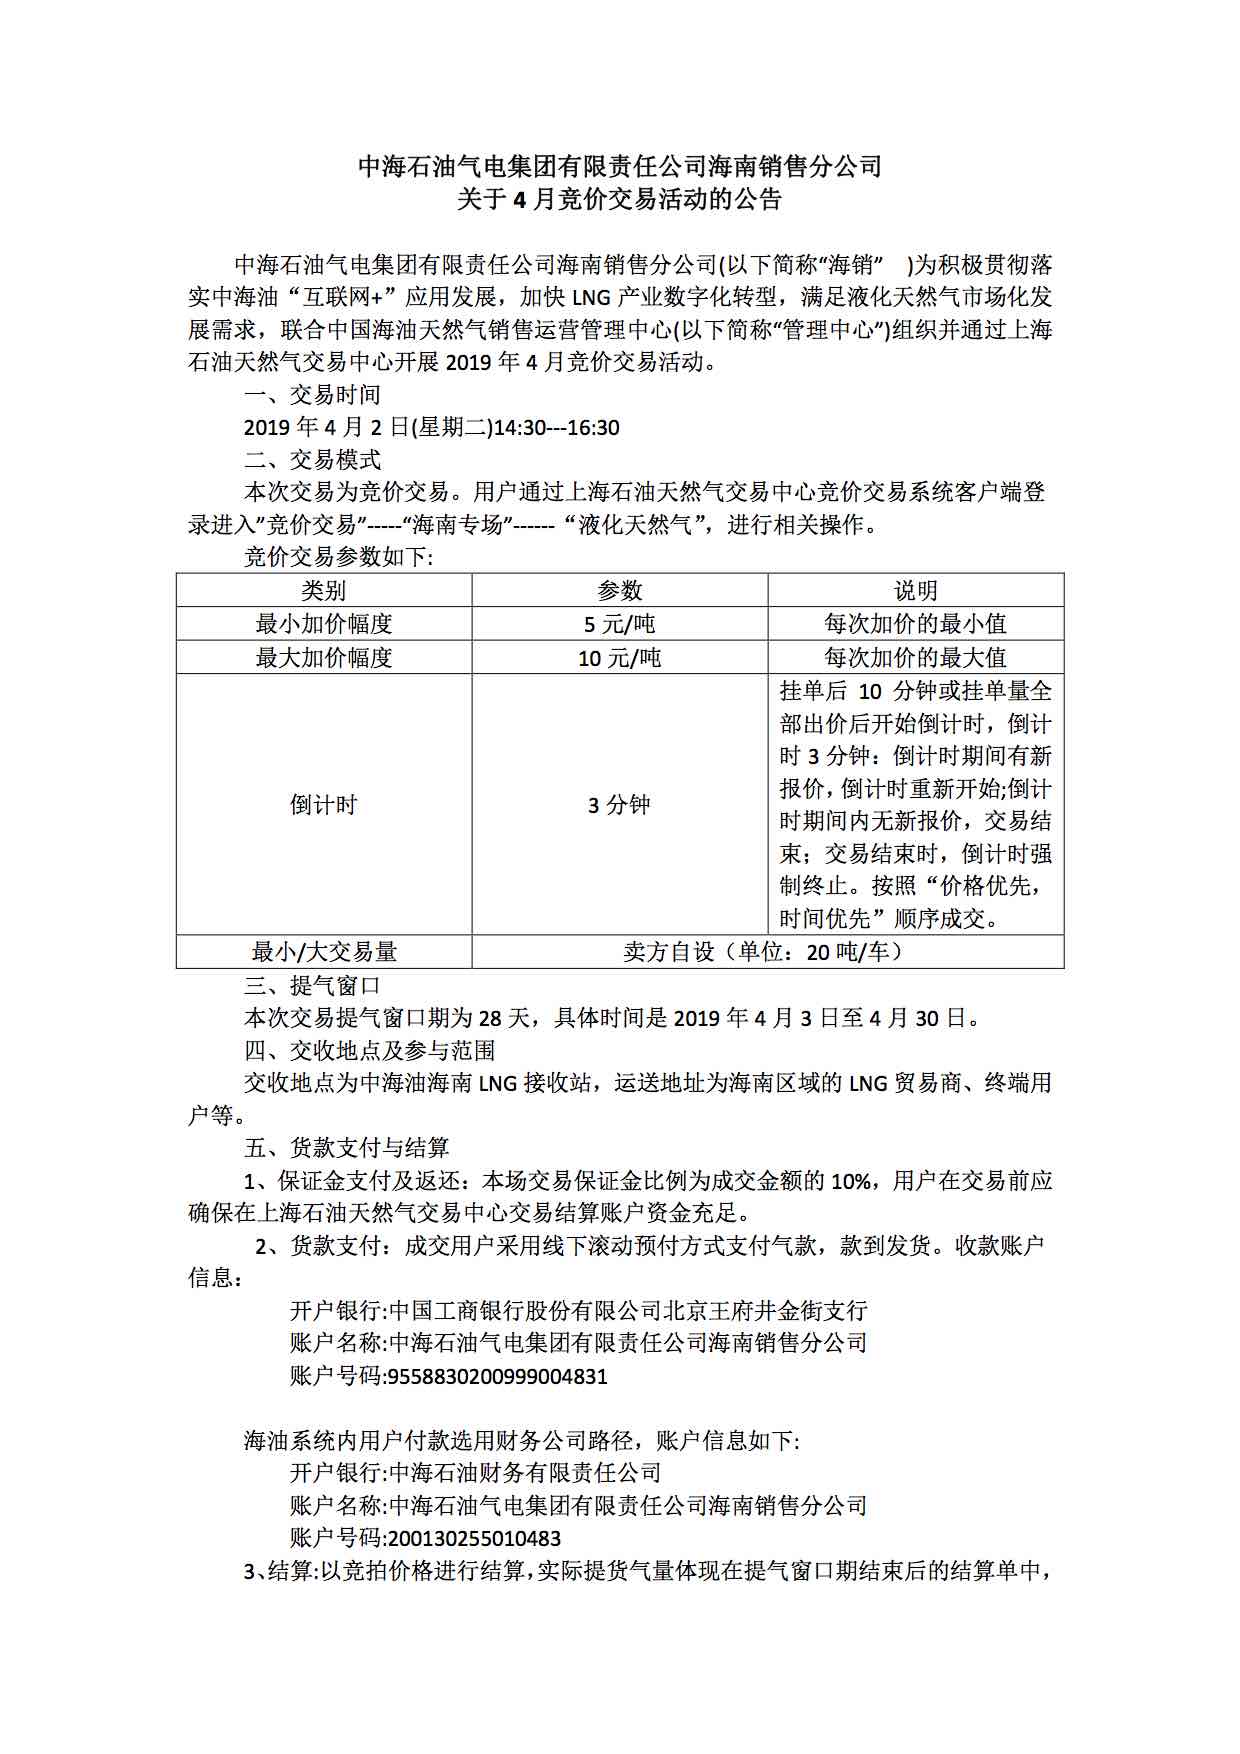 中海油海销关于4月2日开展LNG竞价交易的公告.jpg